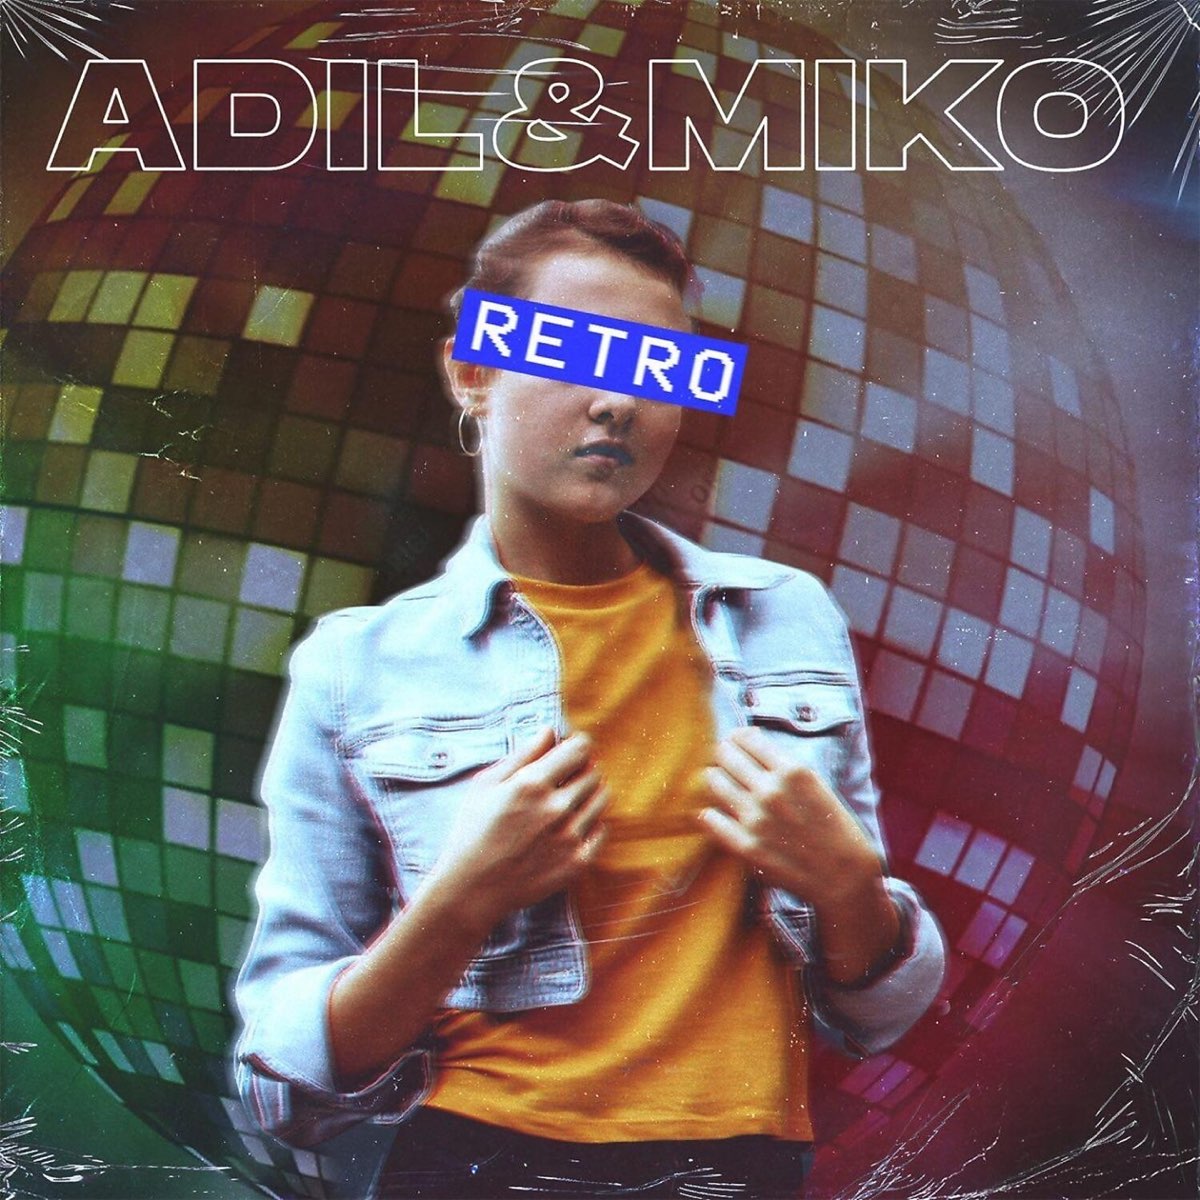 Retro alexander pierce remix. Miko – Retro. Мико Адиль ретро ремикс. Певец Miko Adil Retro. Miko – Retro (Alexander Pierce Remix).